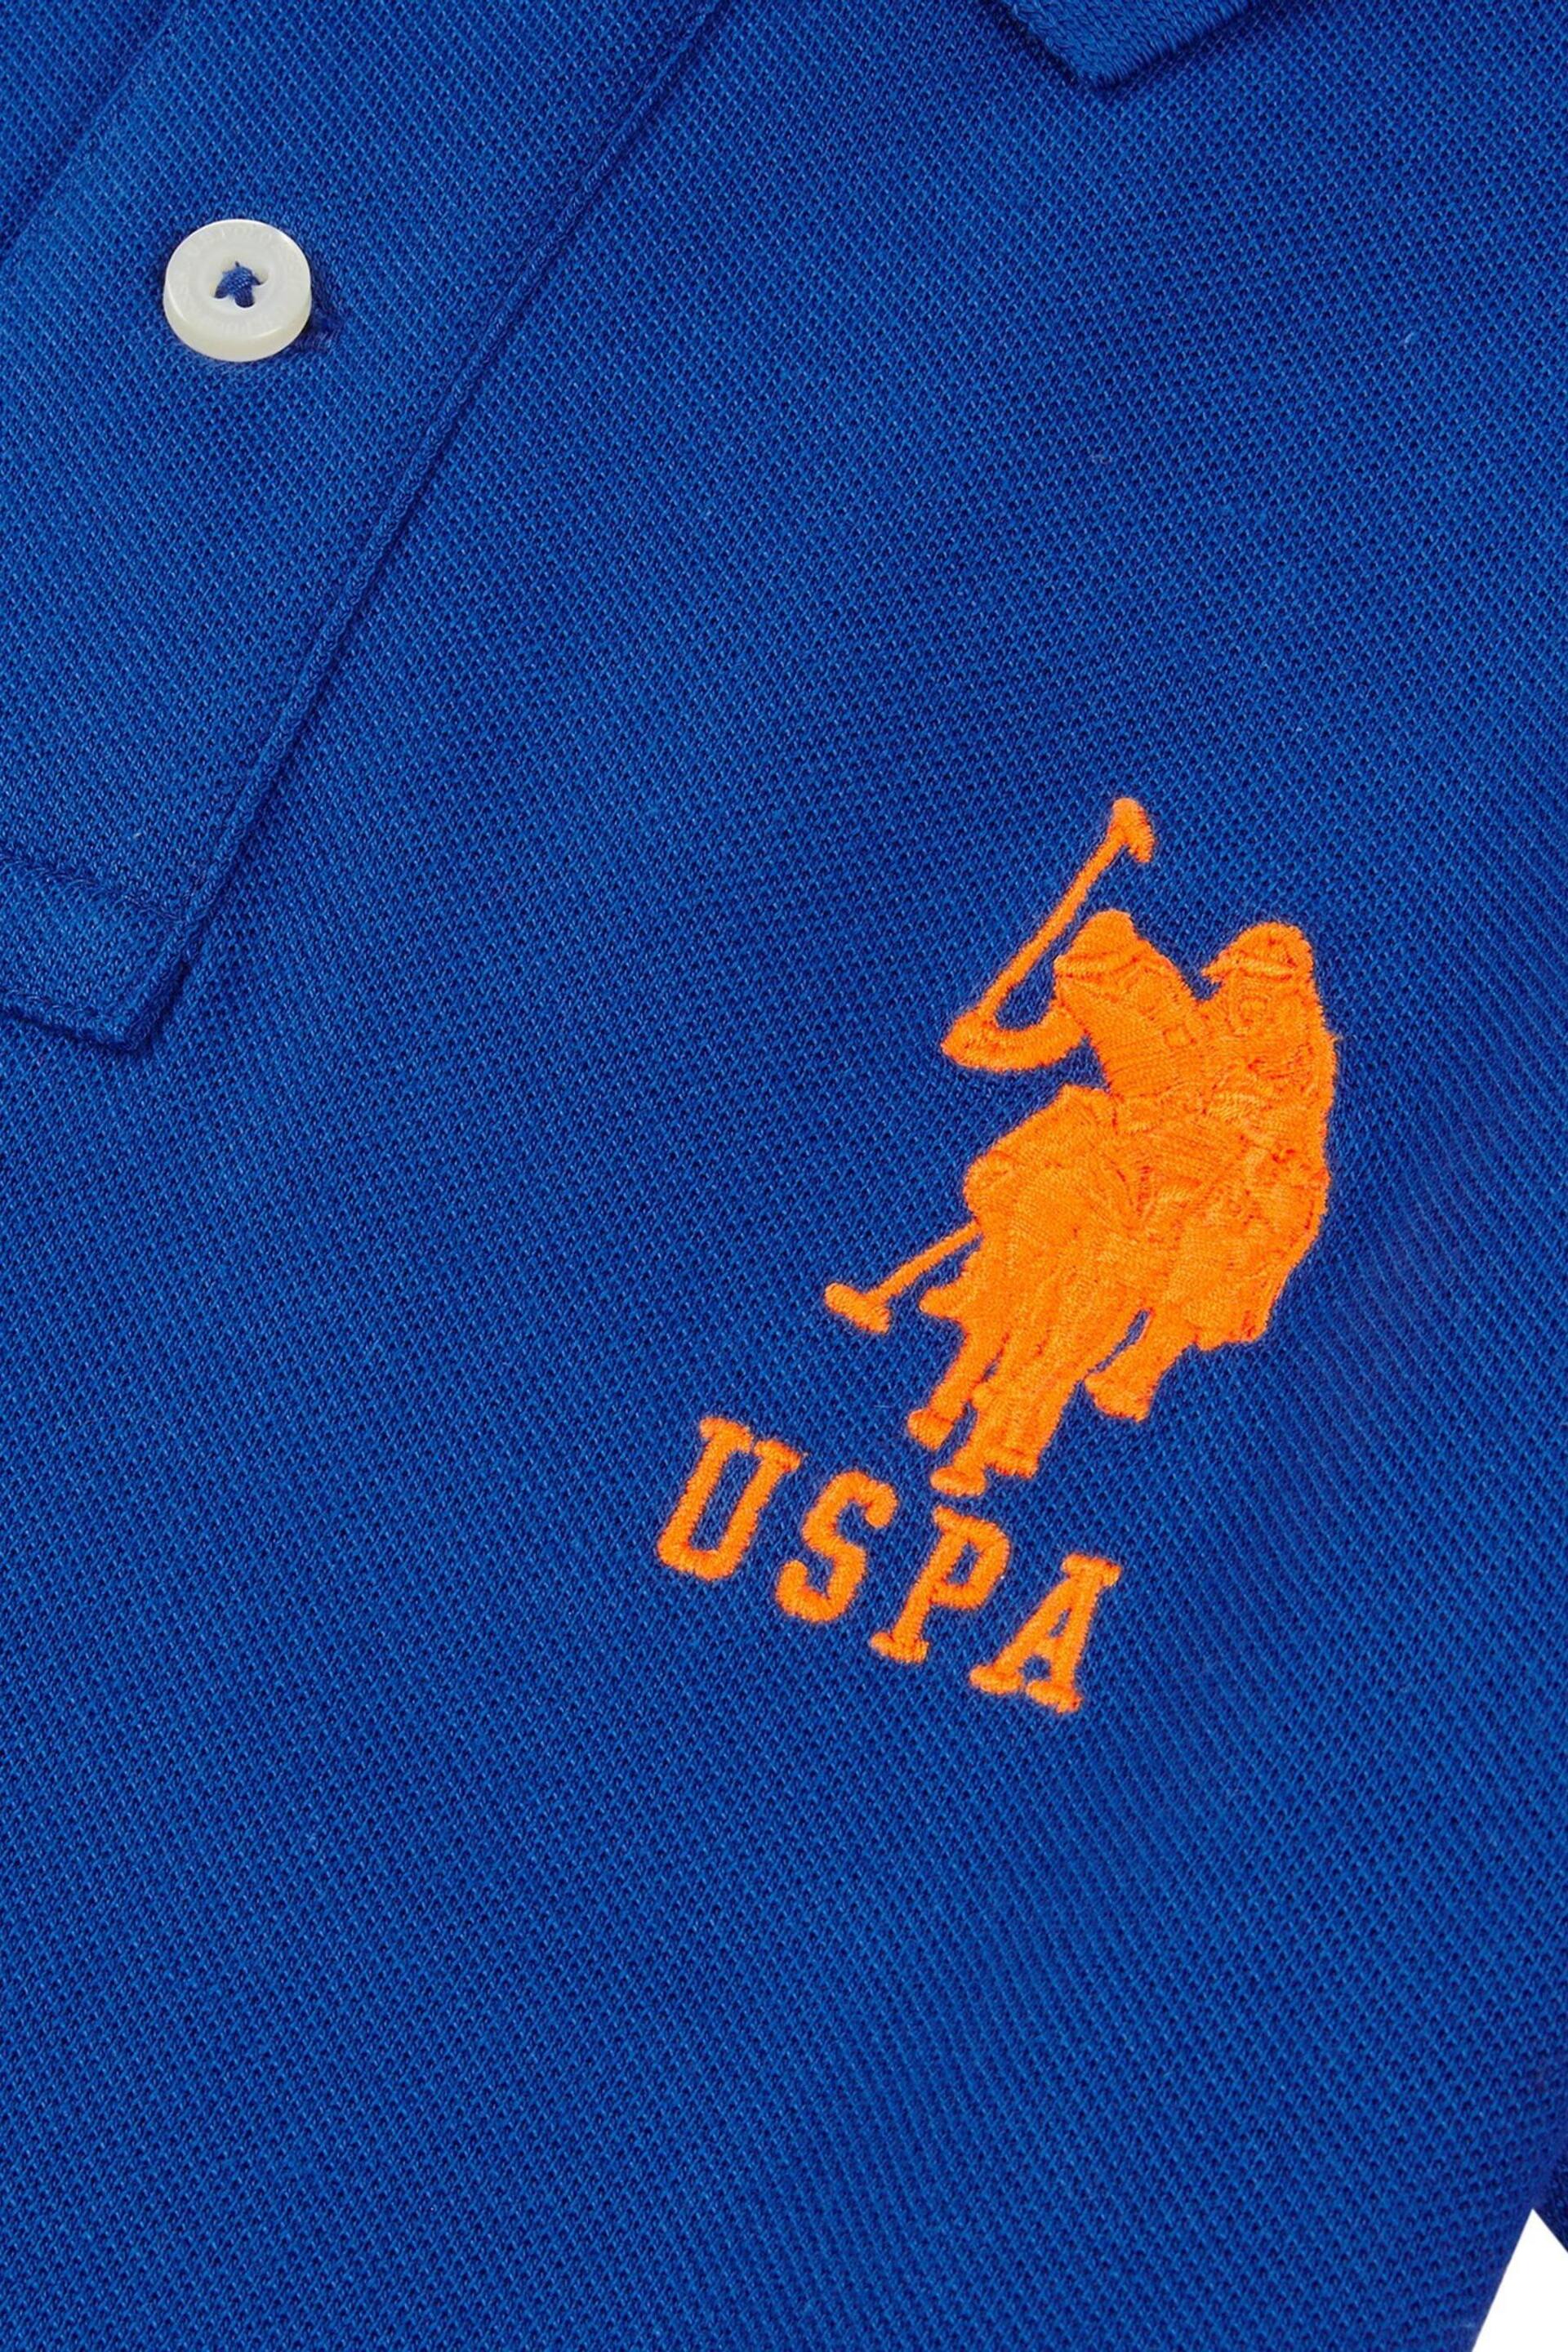 U.S. Polo Assn. Boys Blue Player 3 Pique Polo Shirt - Image 7 of 7